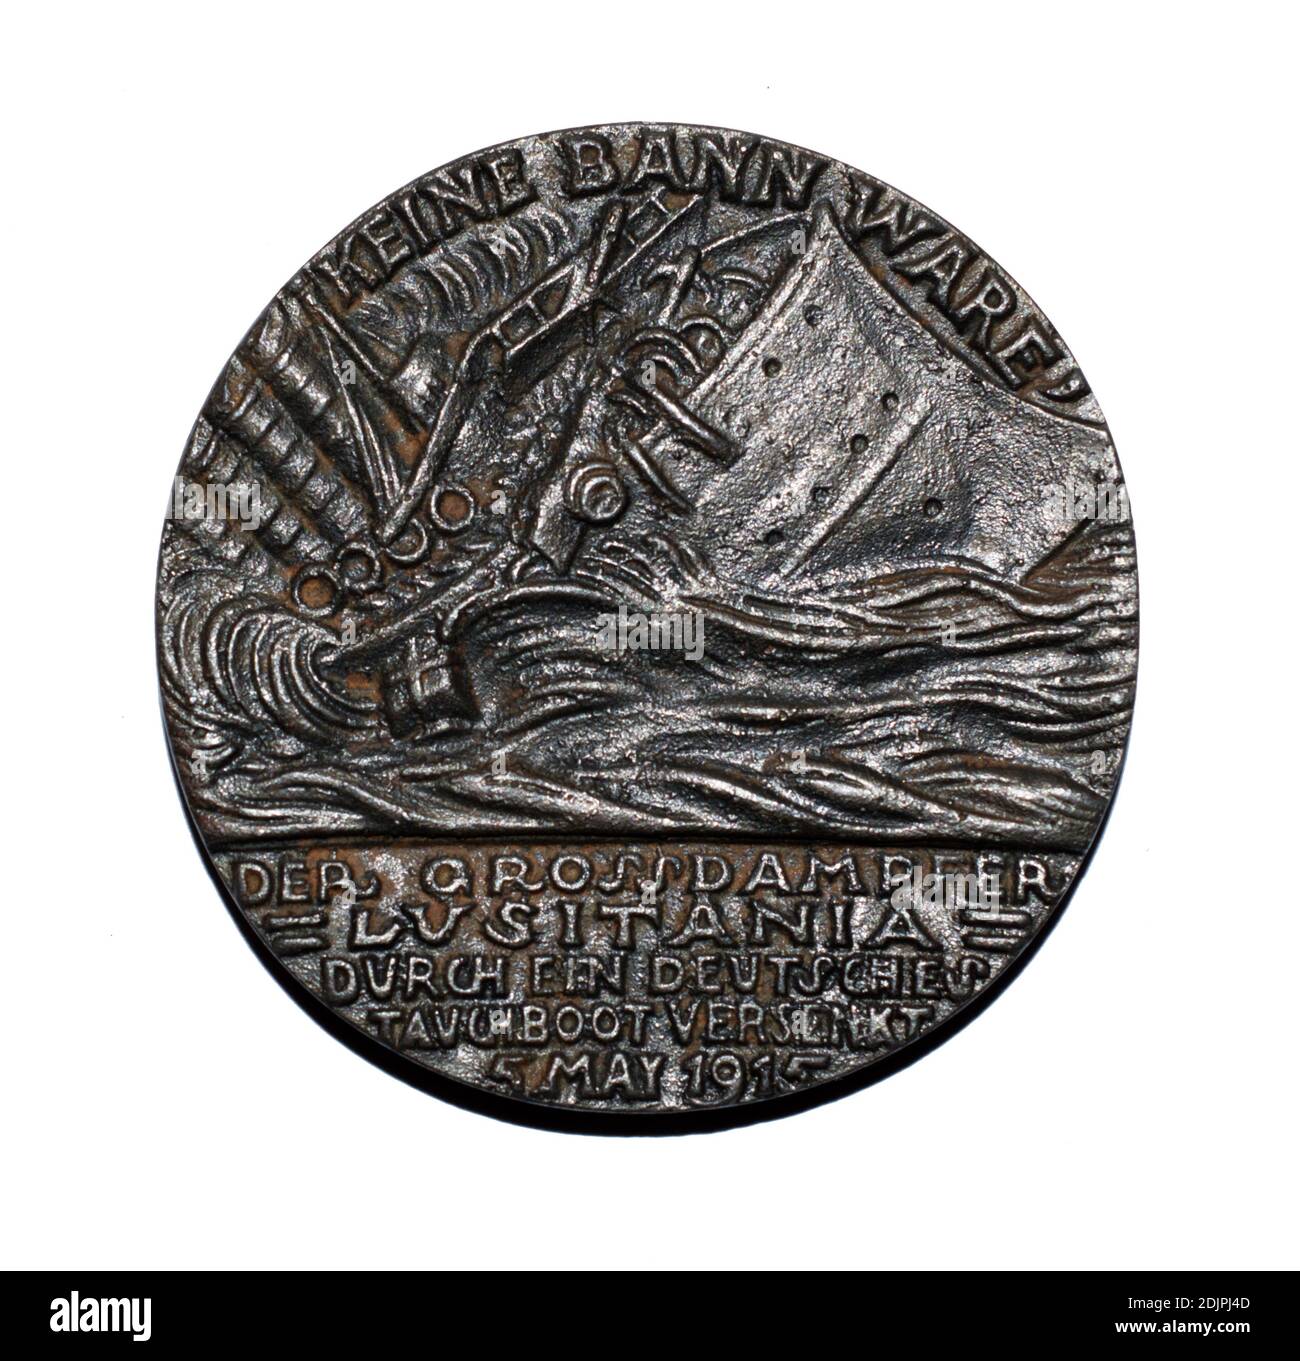 Eine Vorderansicht einer britischen Propagandakopie von Karl Goetzs ‘Lusitania Medallion’, die das Torpedoschiff sicking zeigt. Stockfoto